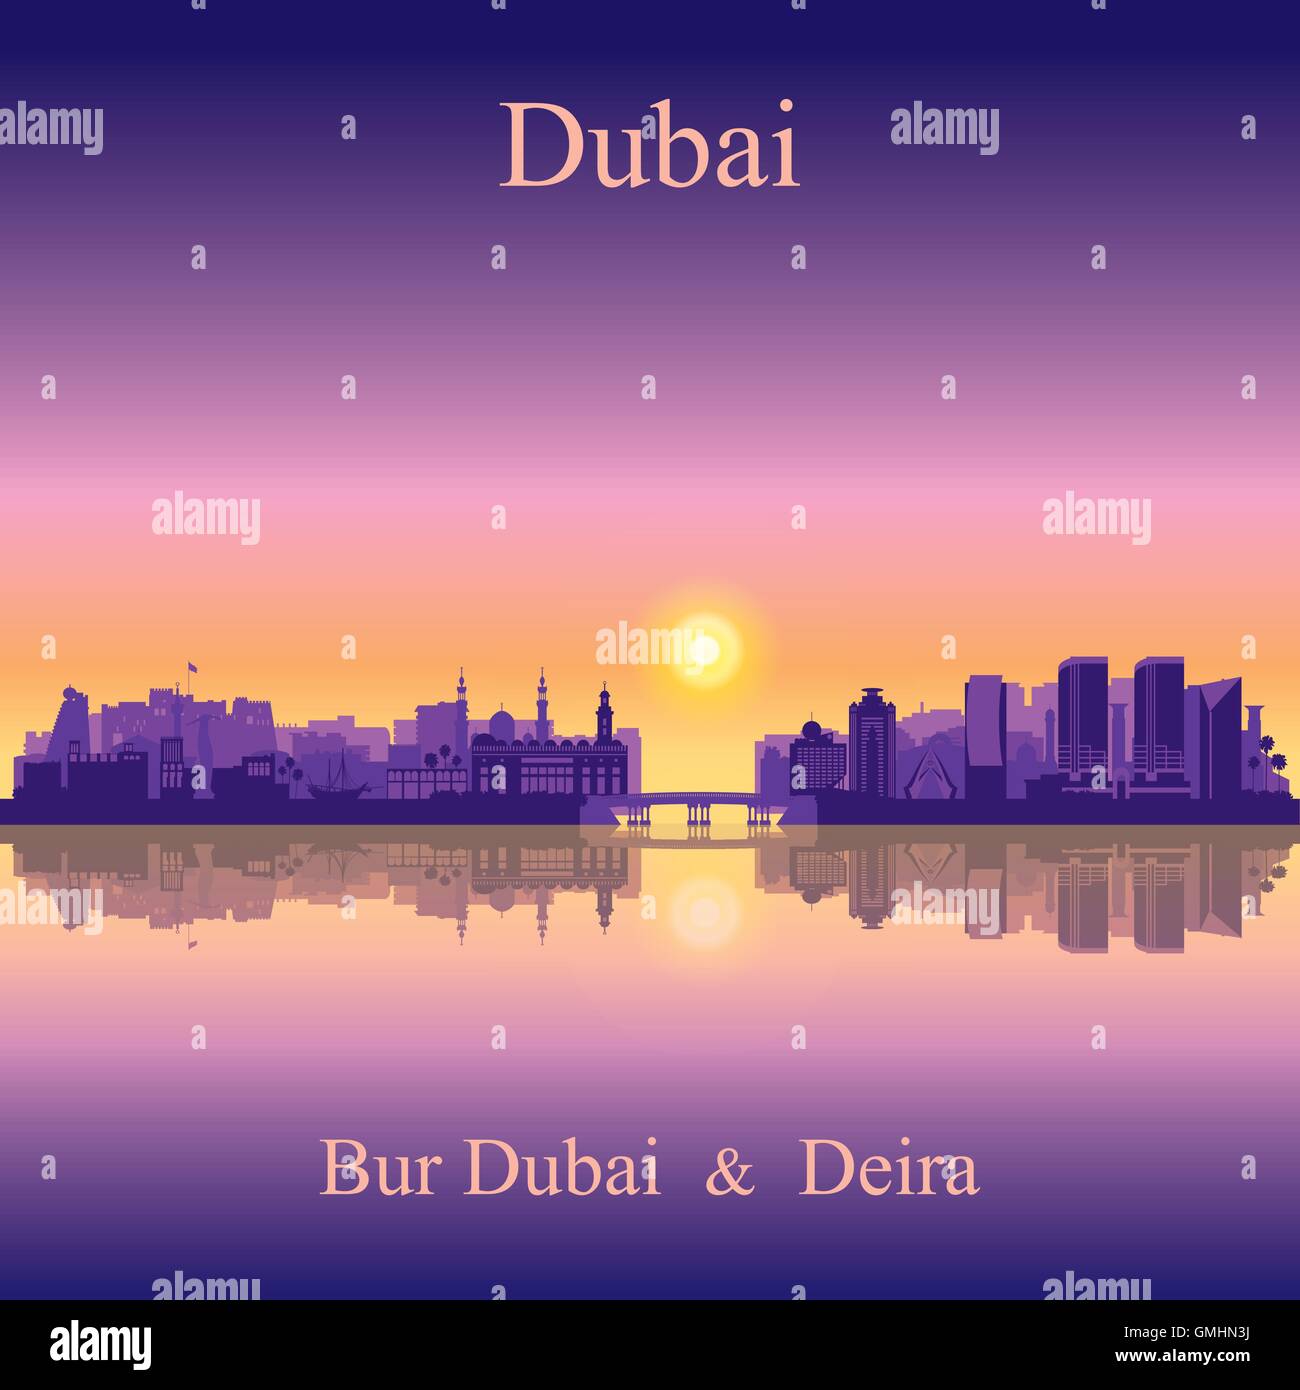 Dubai Deira and Bur Dubai skyline silhouette background Stock Vector